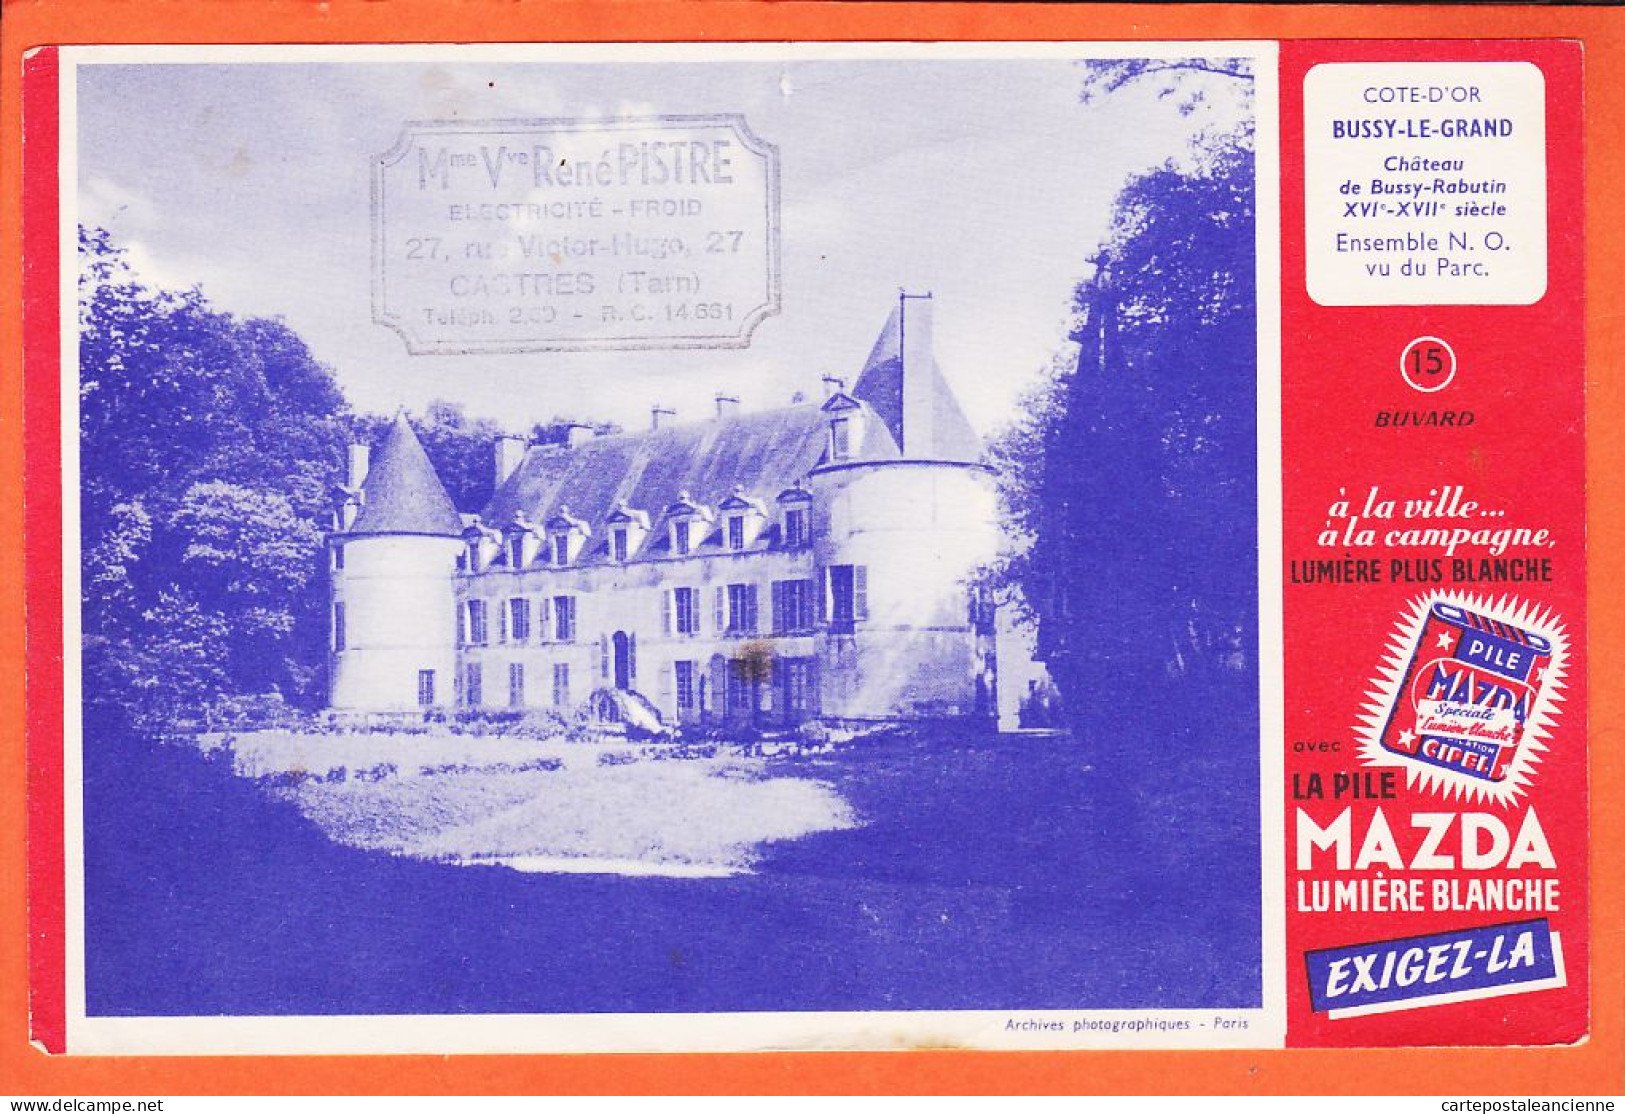 06206 / Buvard N°15 Pile MAZDA Lumière Blanche BUSSY-LE-GRAND 21-Cote D'or Chateau RABUTIN Ensemble N.O Vu Du Parc  - Accumulators